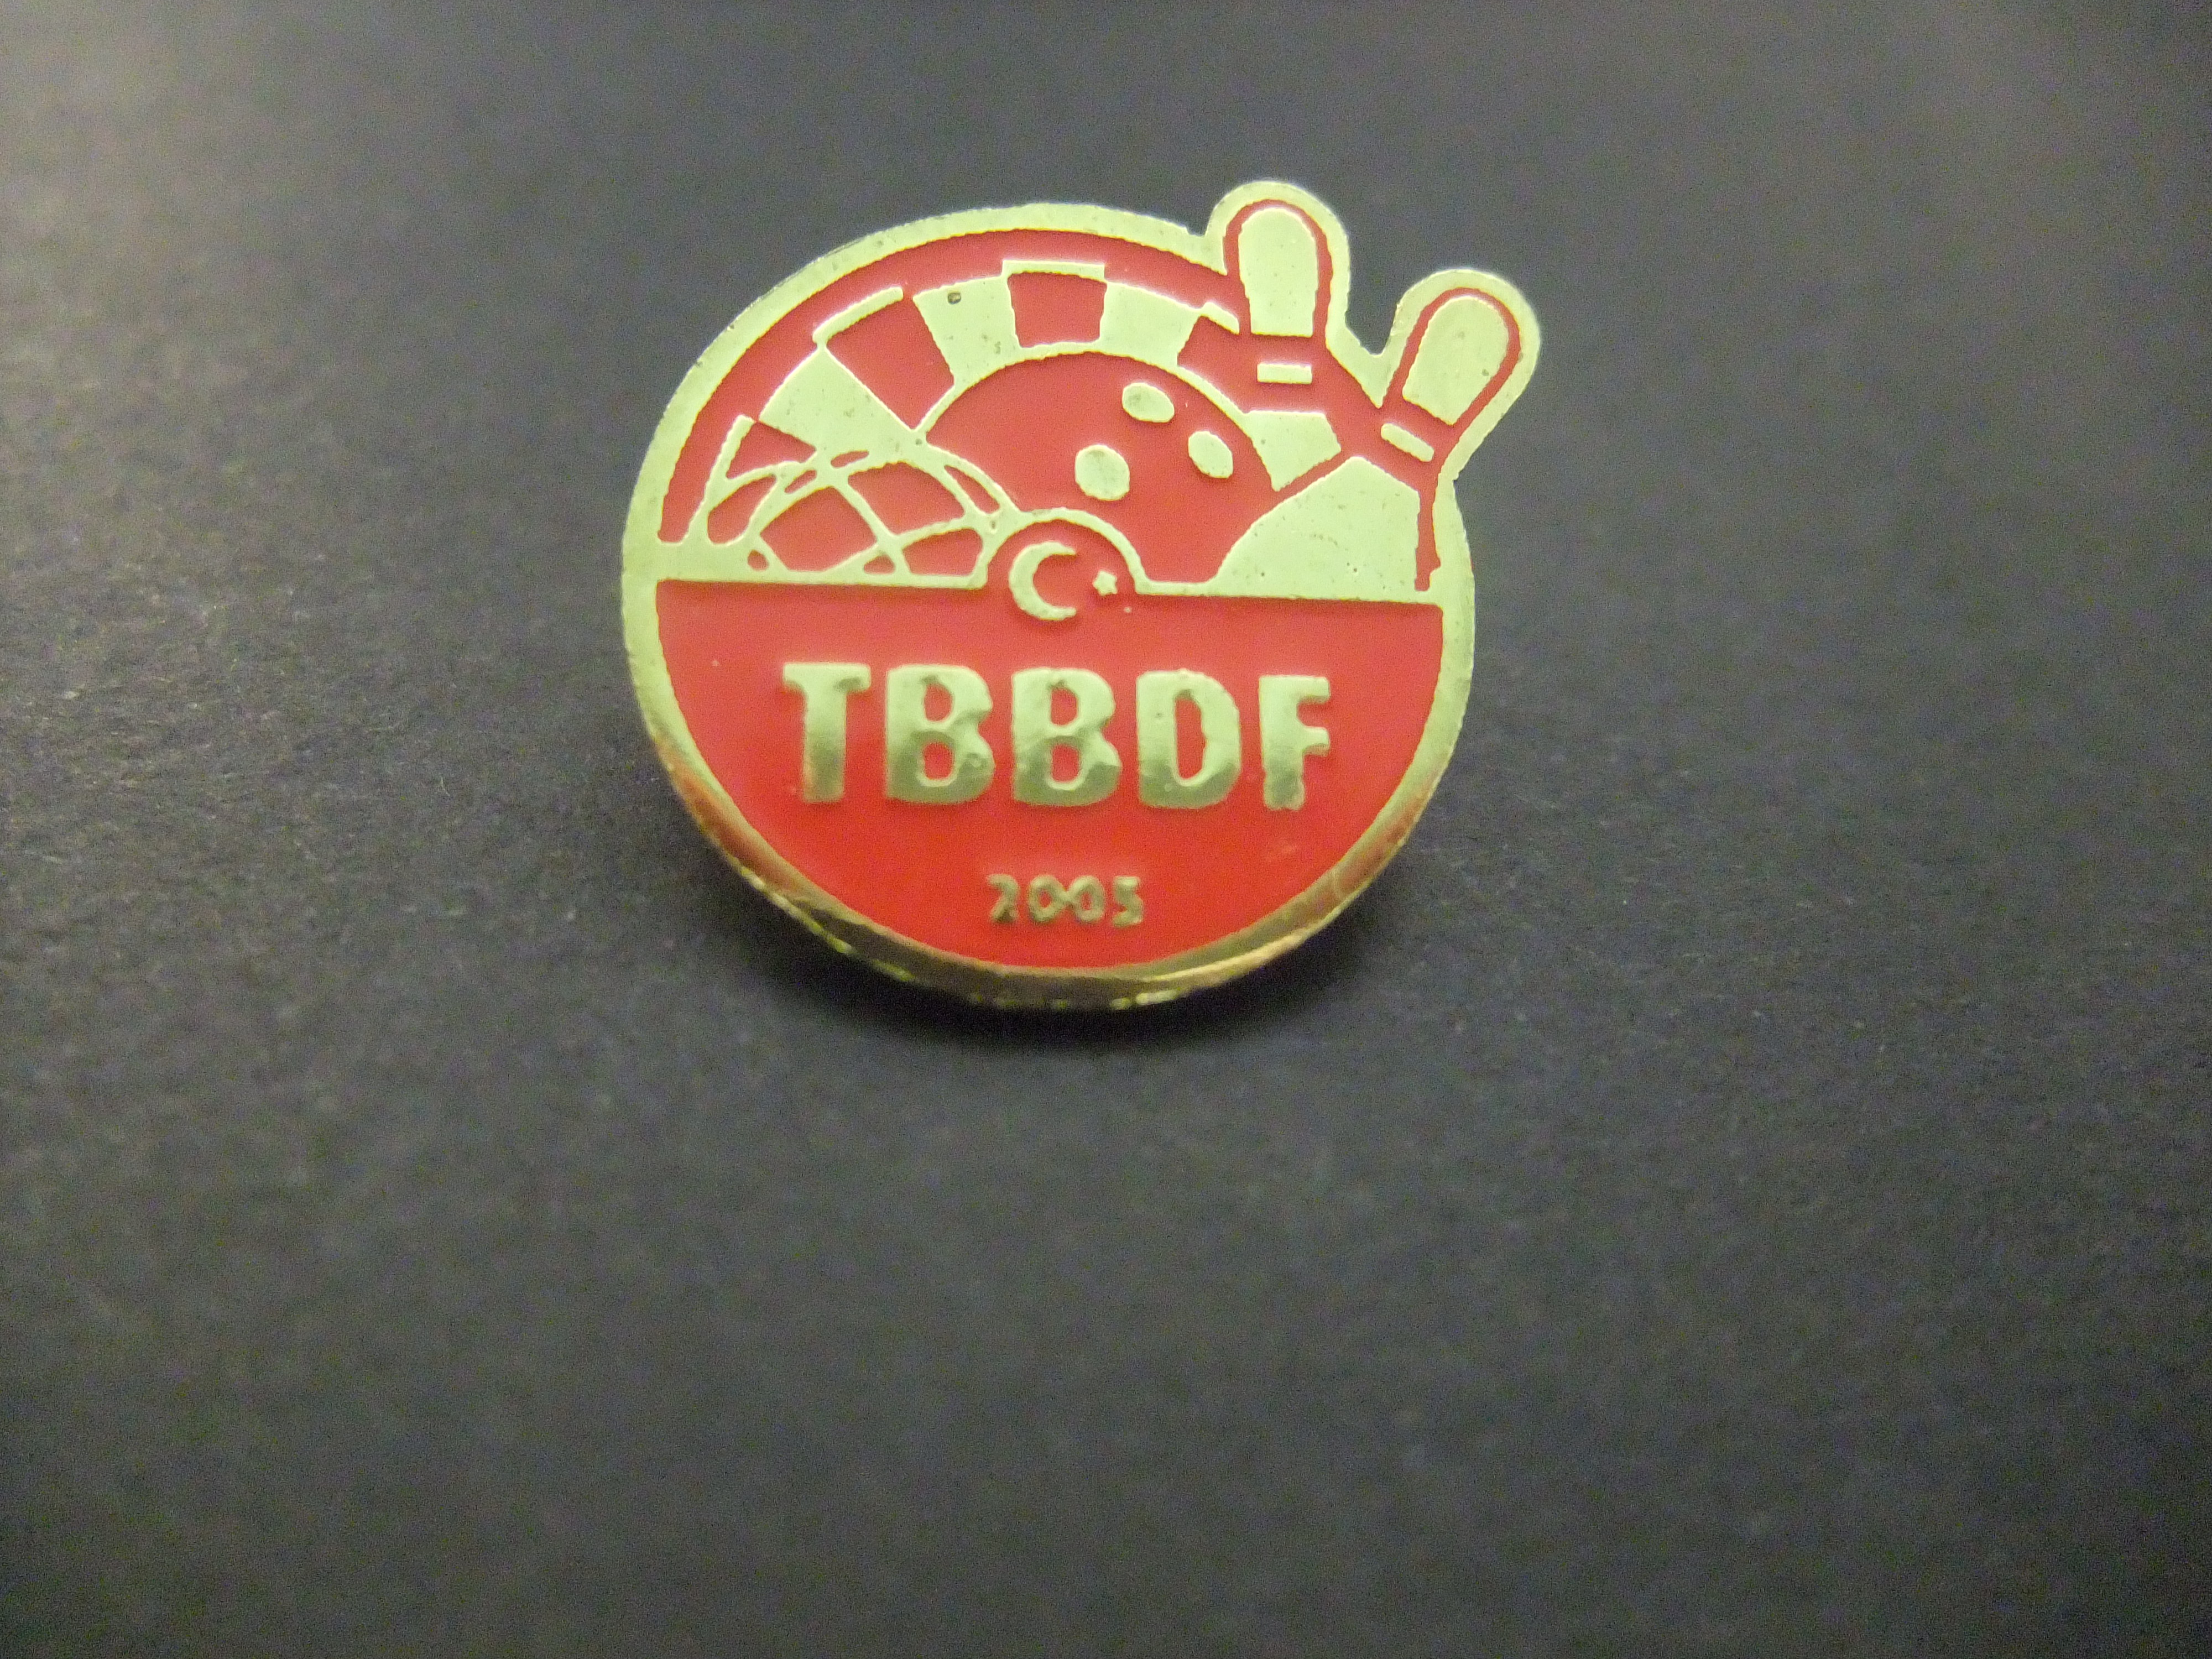 TBBDF Bowling Turkse bowlingbond 2003